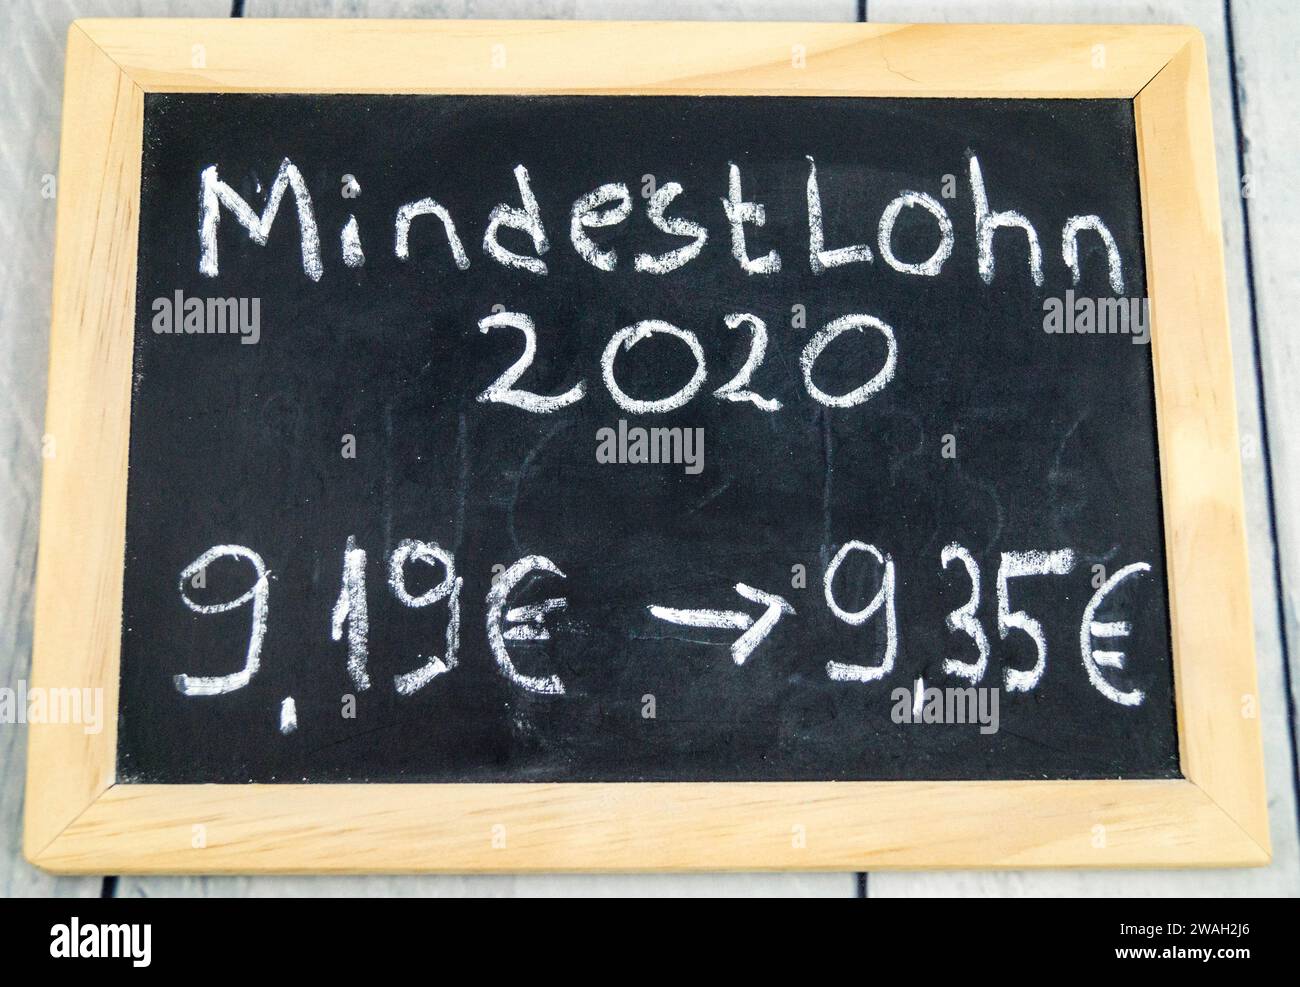 tableau d'écriture avec augmentation du salaire minimum de 9,19 euros à 9,35 euros, 2020, image symbolique Banque D'Images